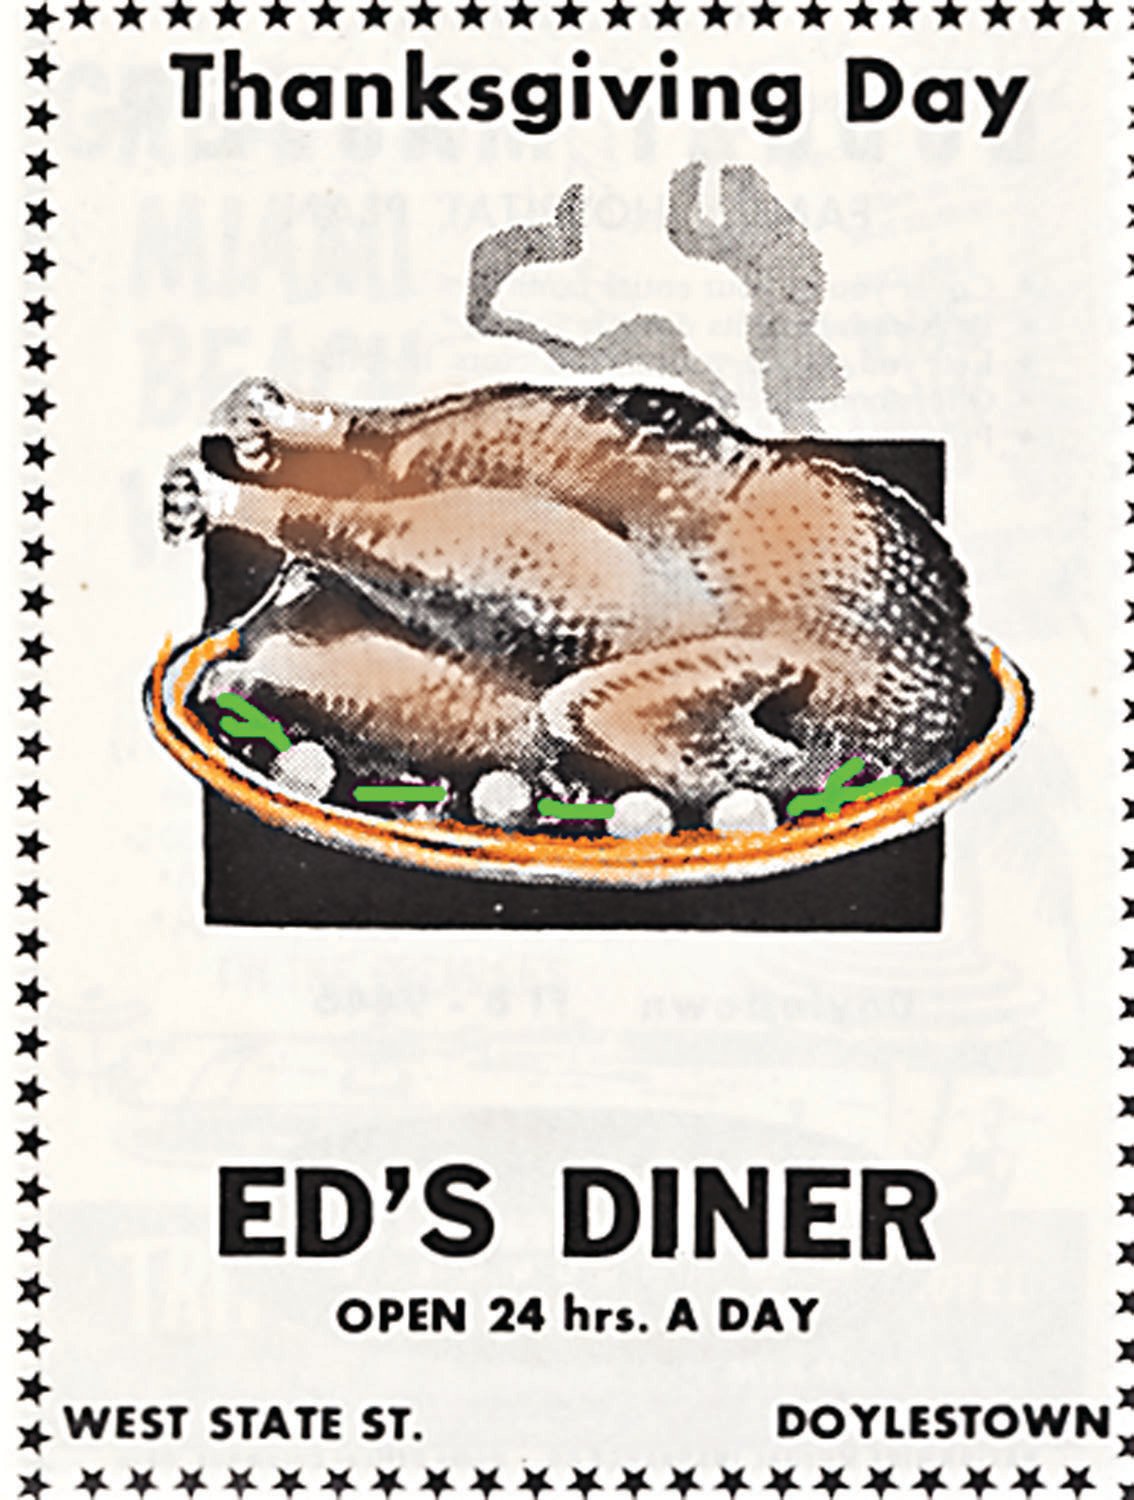 Ed's Diner dinner